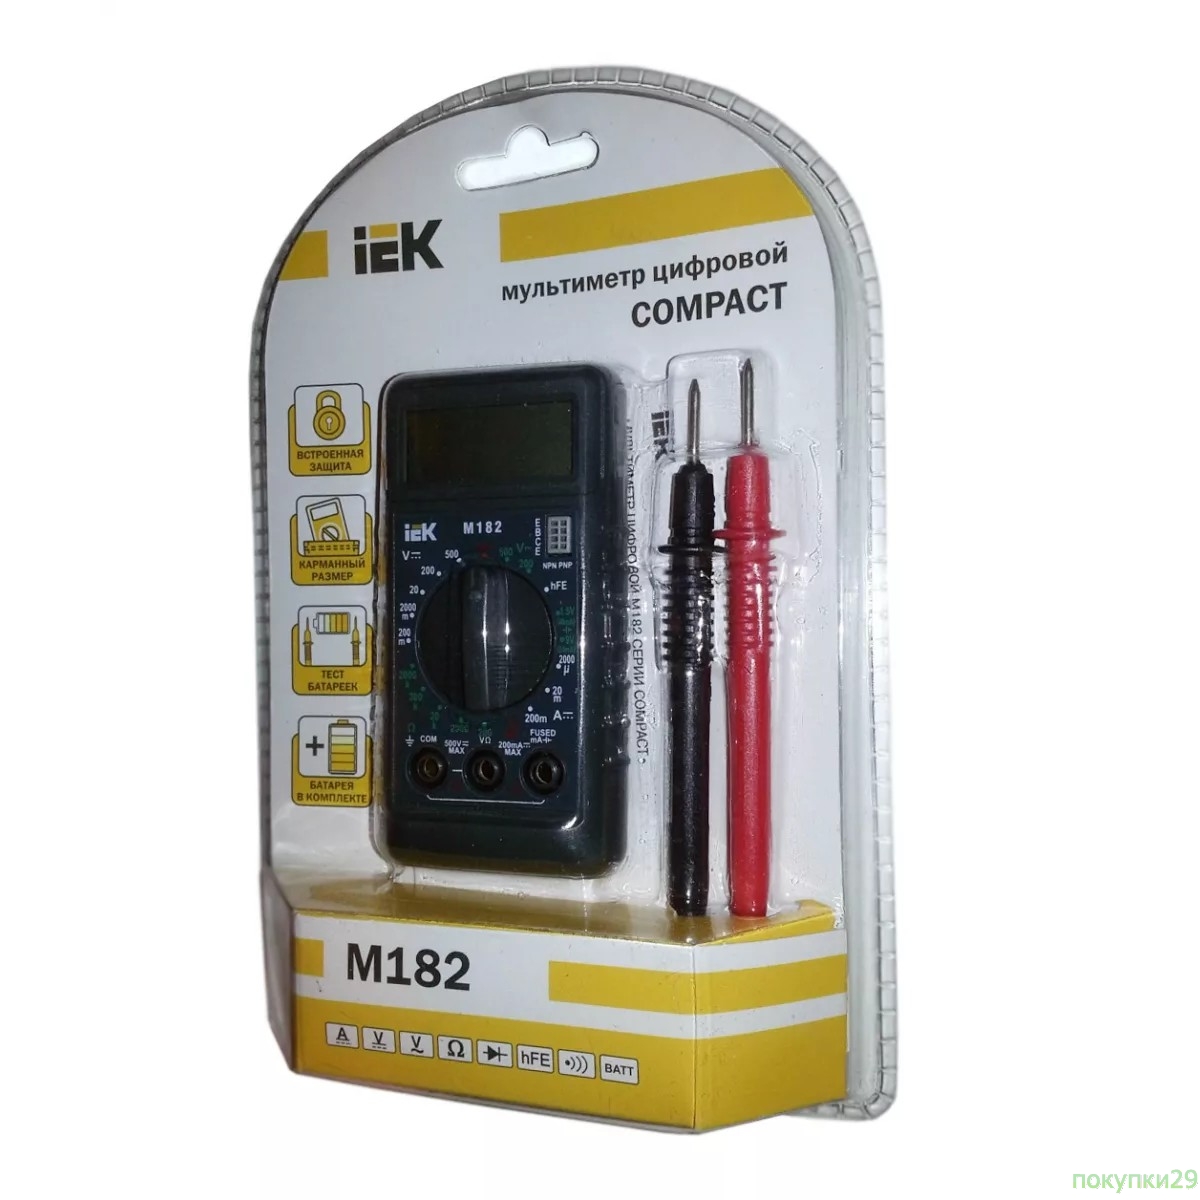 Инструменты Iek TMD-1S-182 Мультиметр цифровой Compact M182 IEK